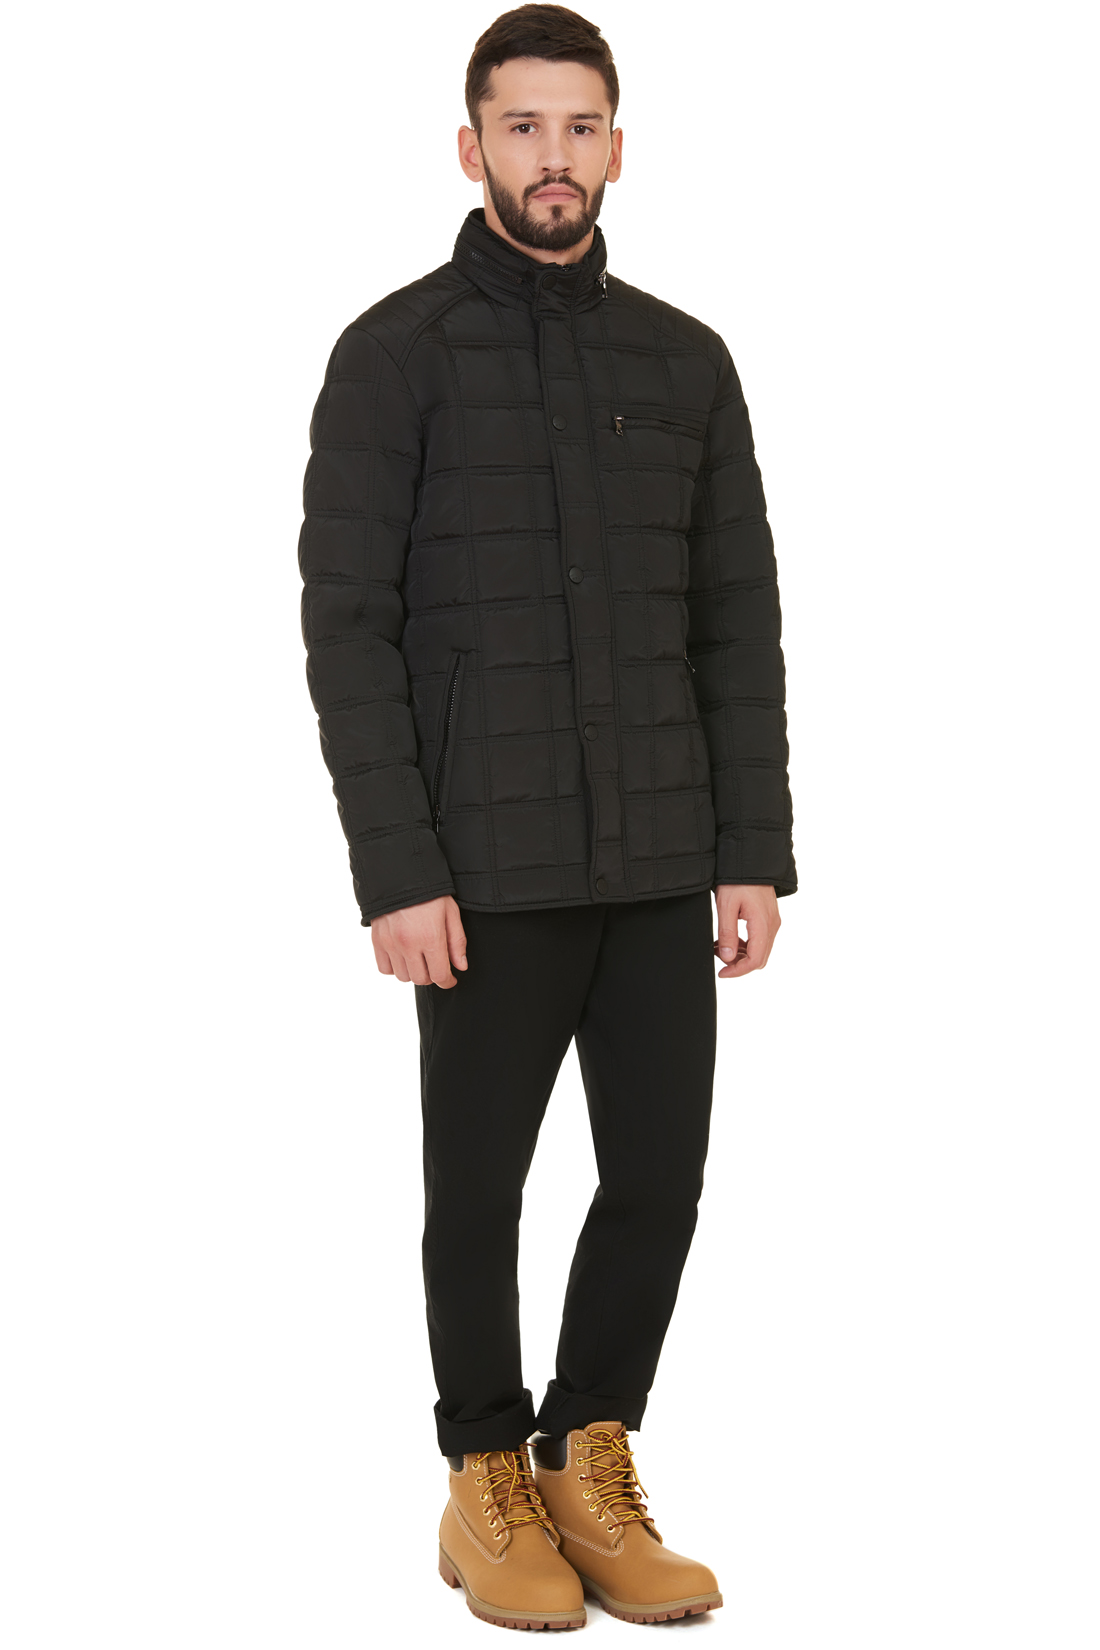 Куртка в байкерском стиле (арт. baon B537549), размер L, цвет черный Куртка в байкерском стиле (арт. baon B537549) - фото 5